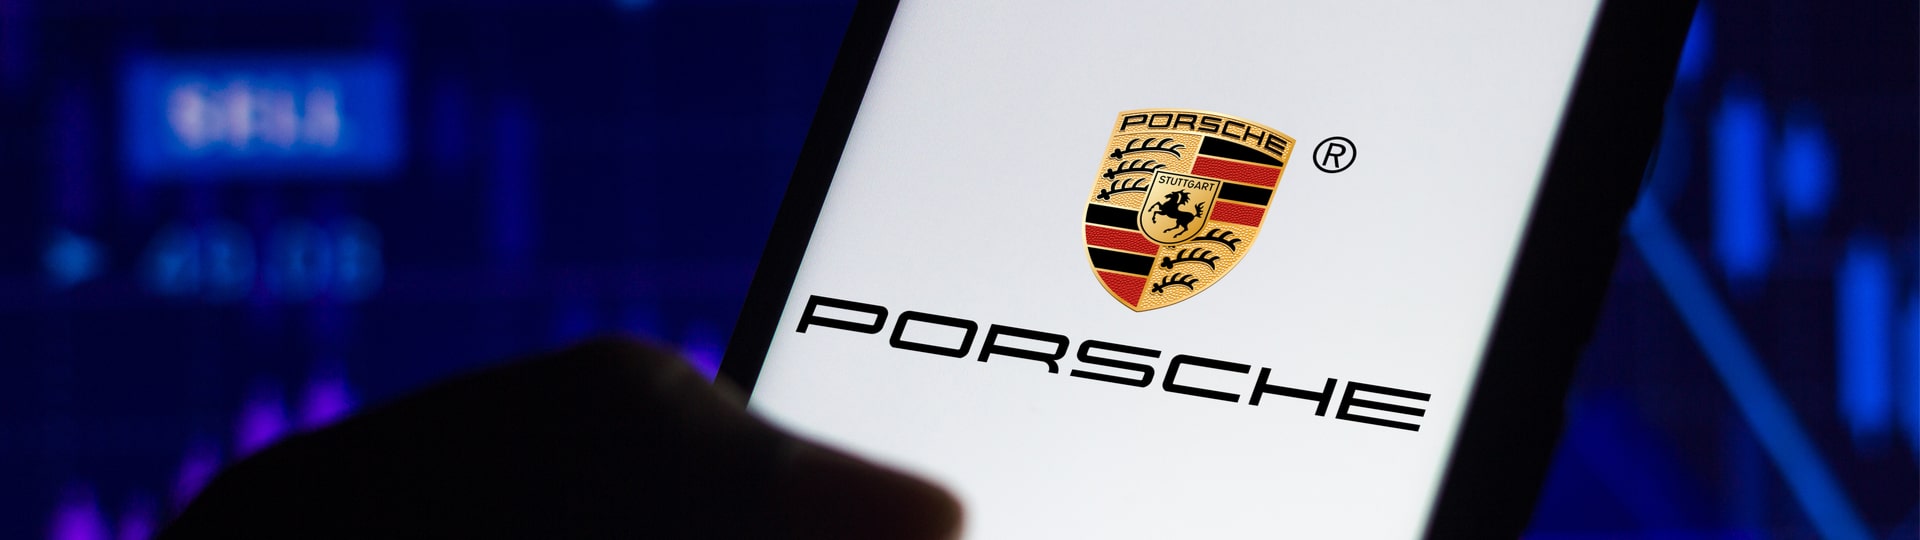 Zájem o akcie Porsche několikanásobně přesahuje objem primární nabídky